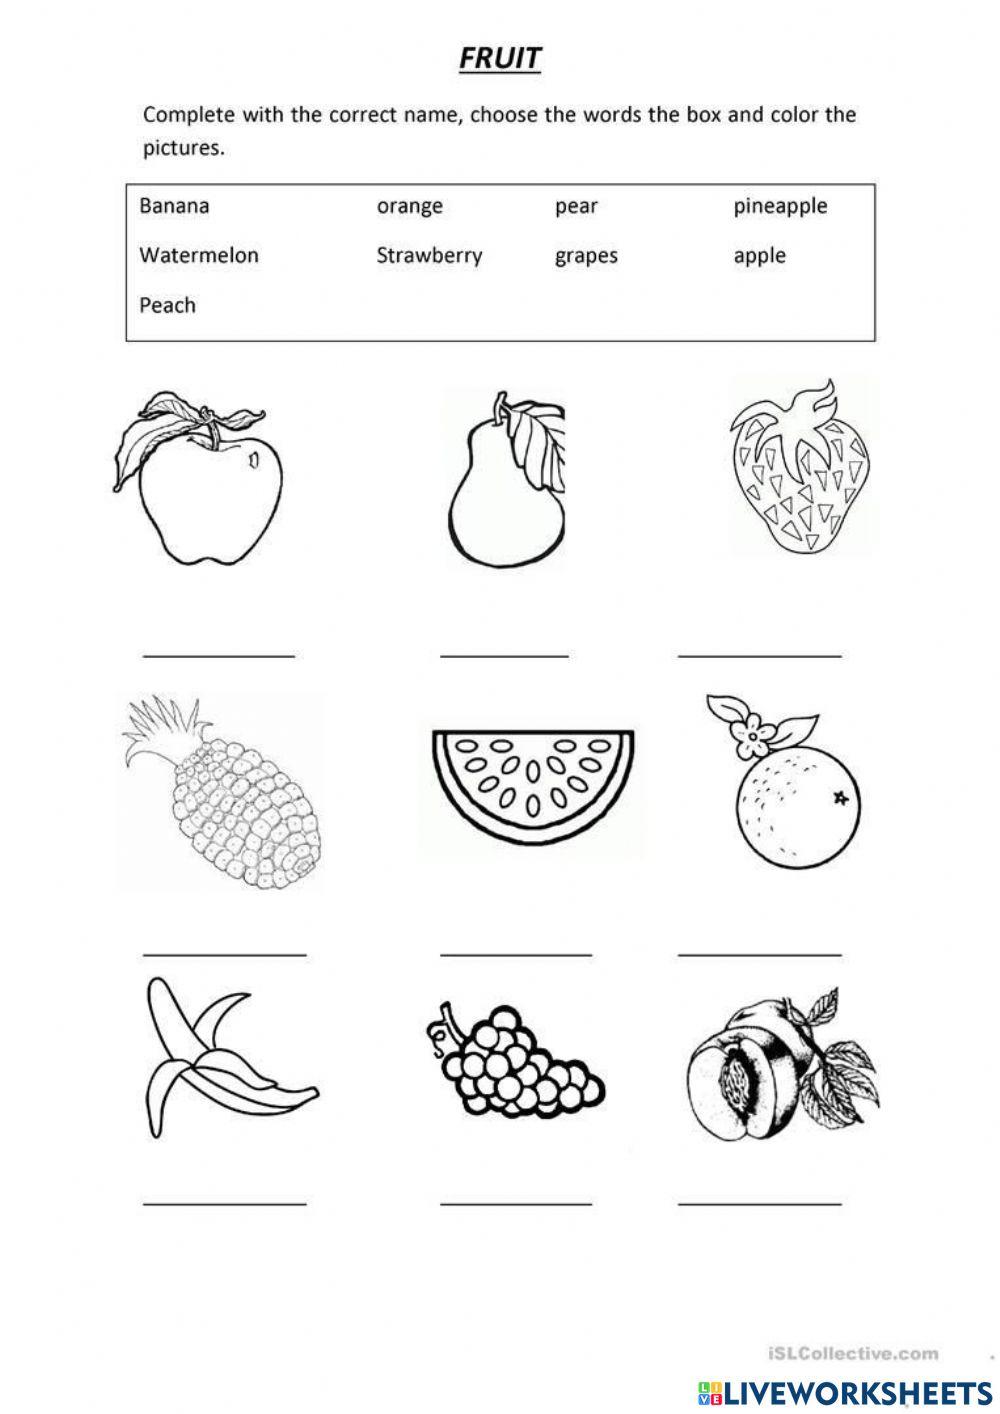 Fruit! worksheet | Live Worksheets